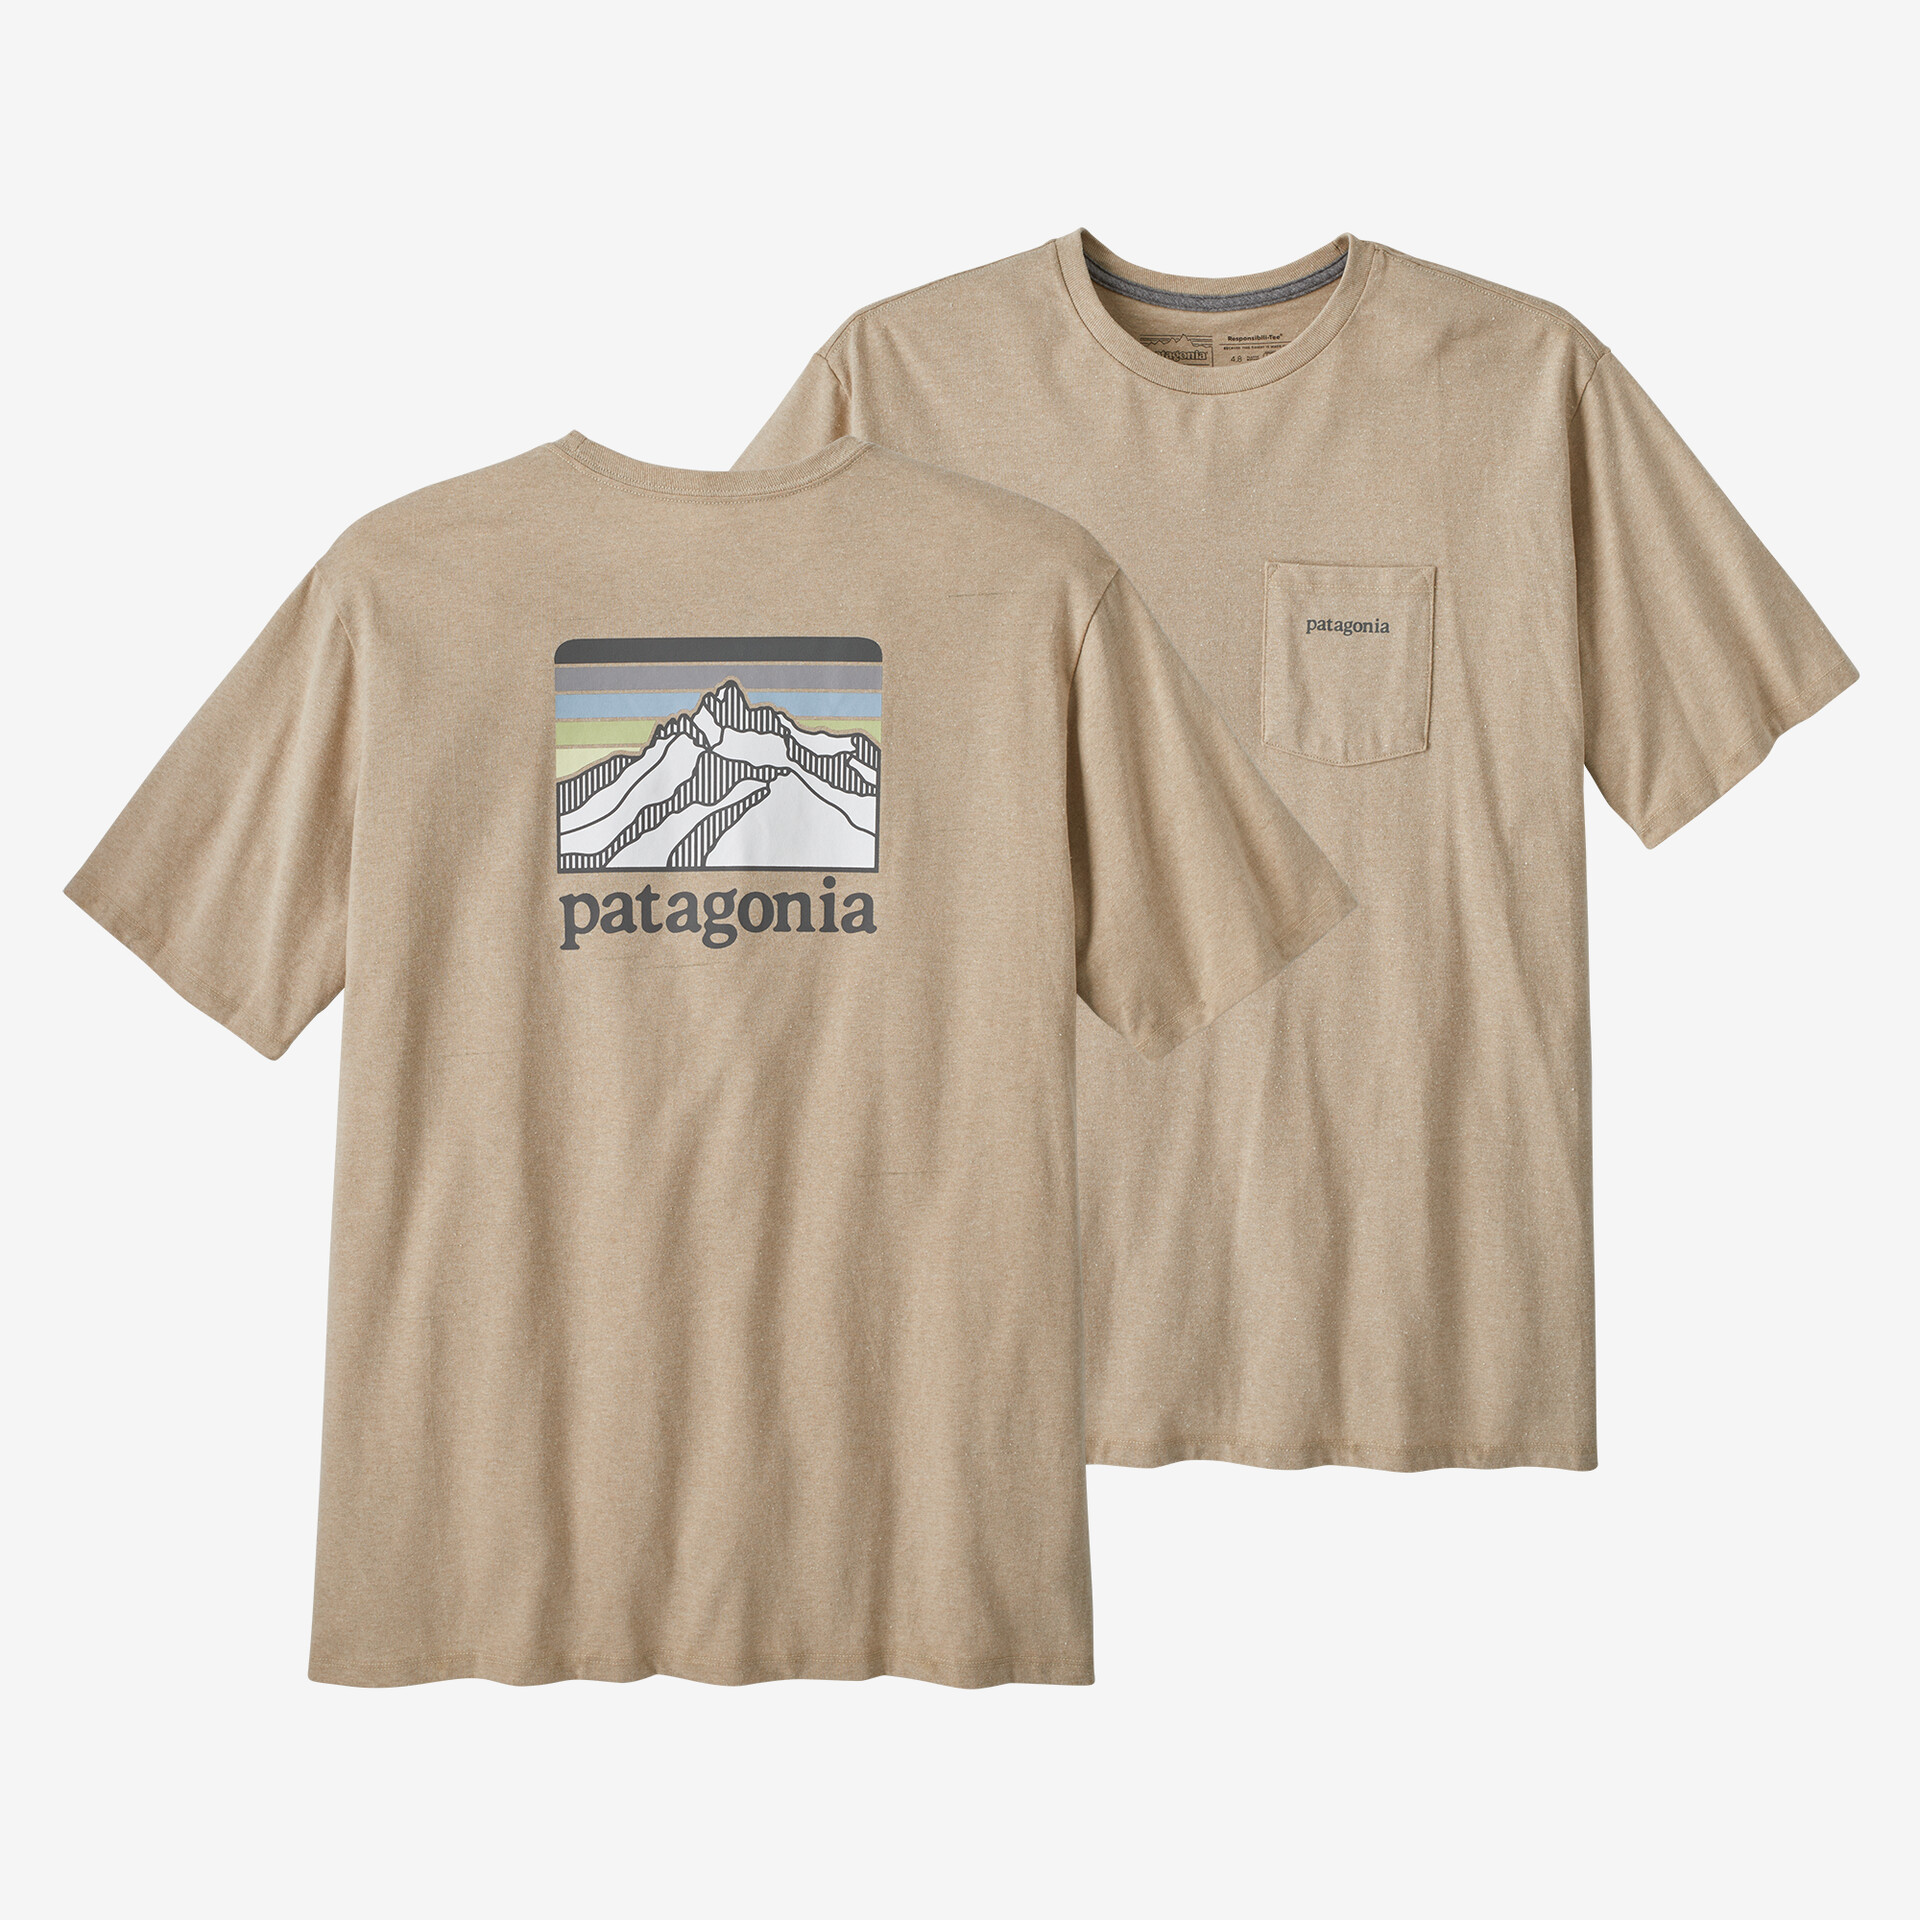 Мужская ответственная футболка с логотипом и карманом Patagonia, цвет Oar Tan в горах графика